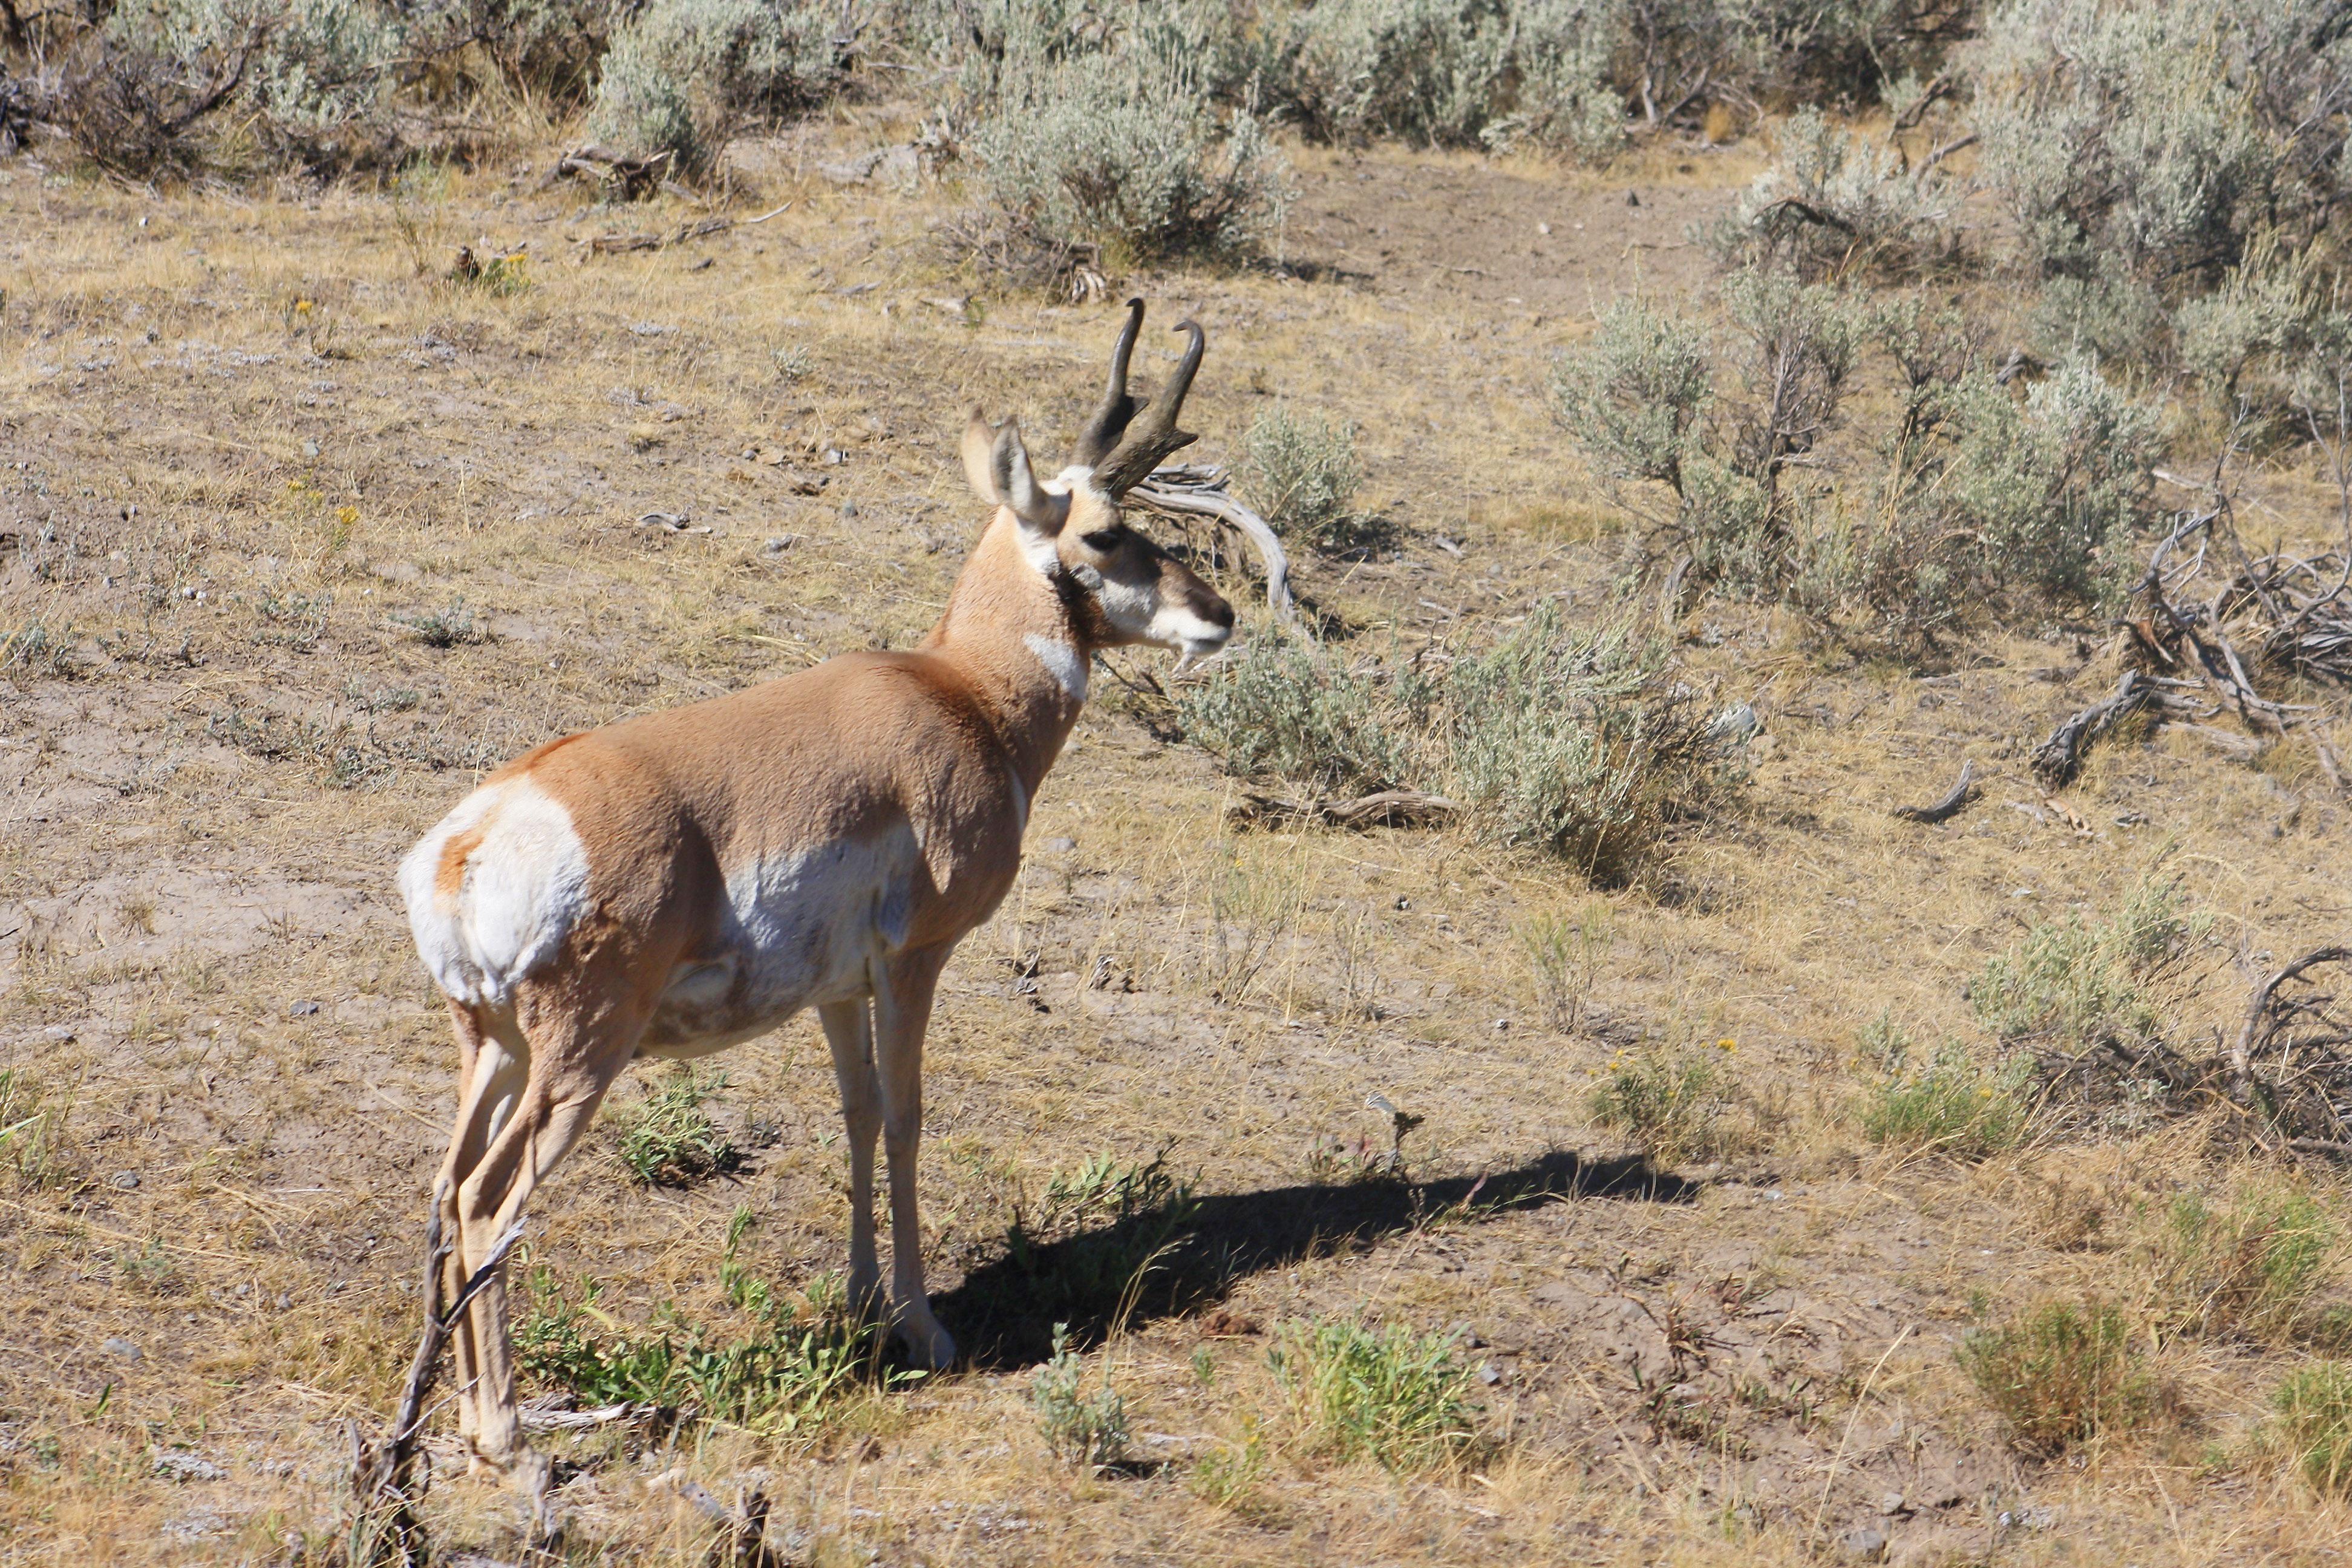 Free of antelope, pronghorn